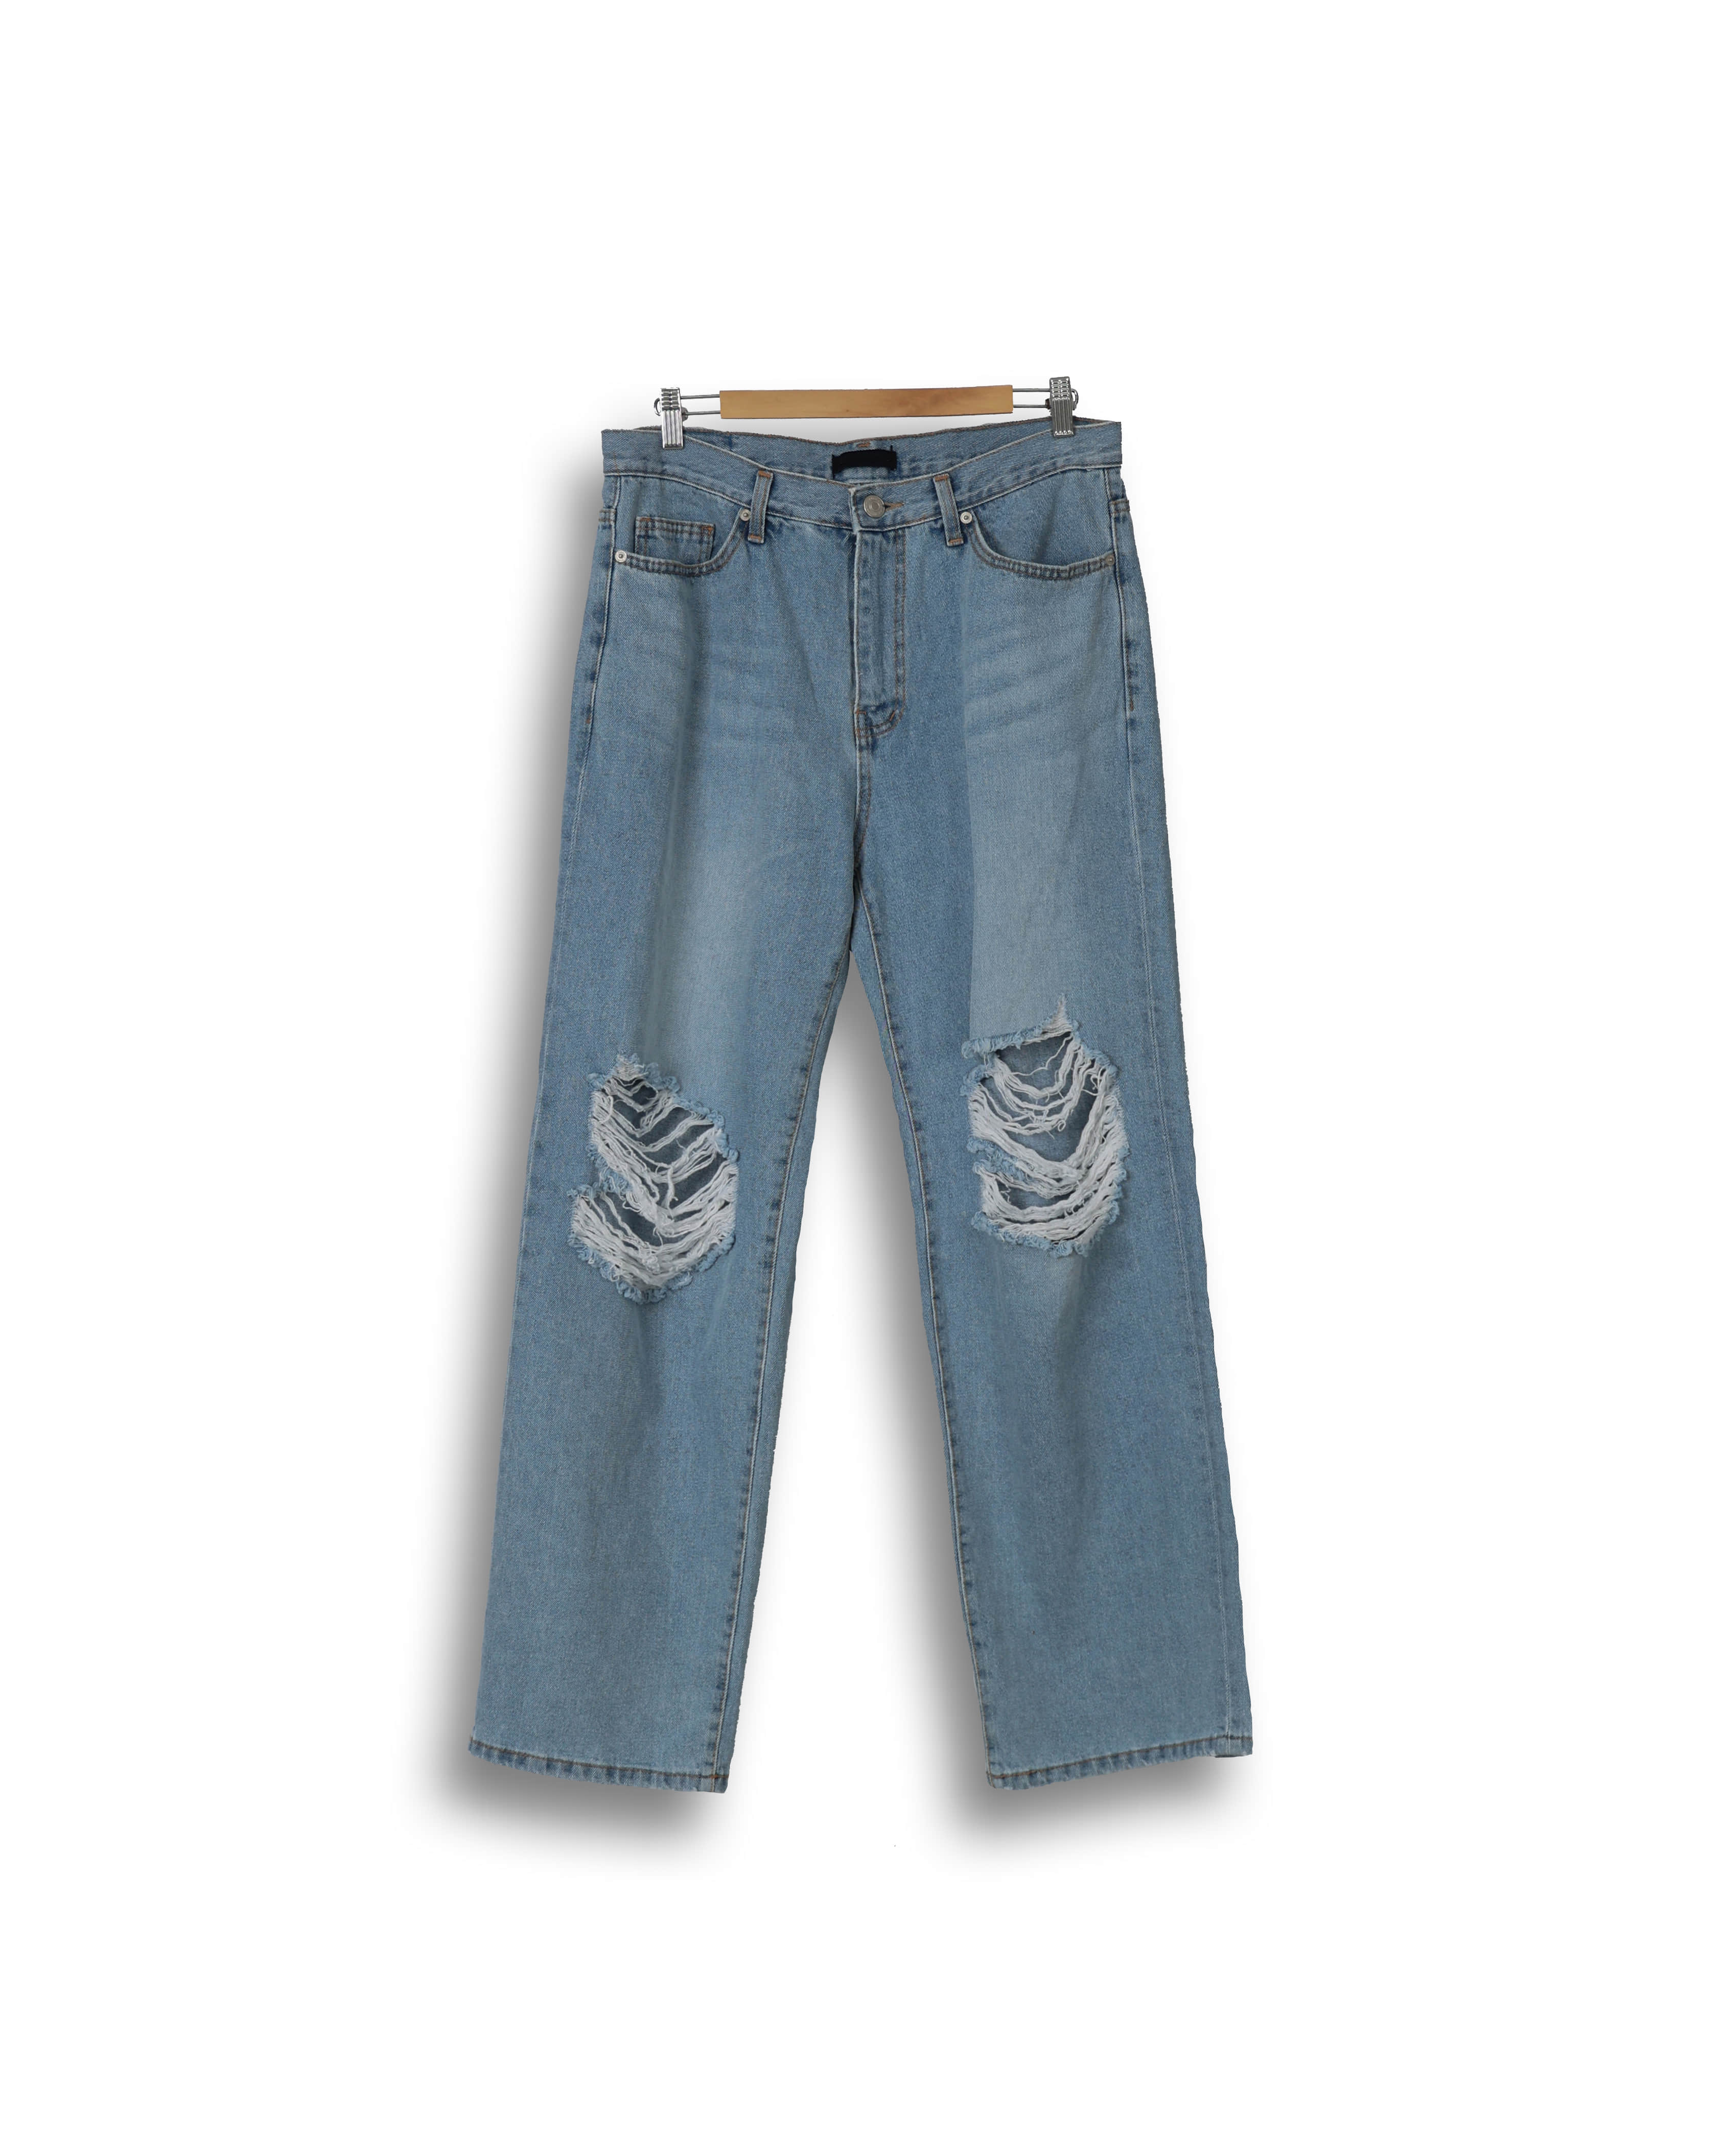 237 OTHER Vintage Wide Denim Pants (Light Blue Denim)